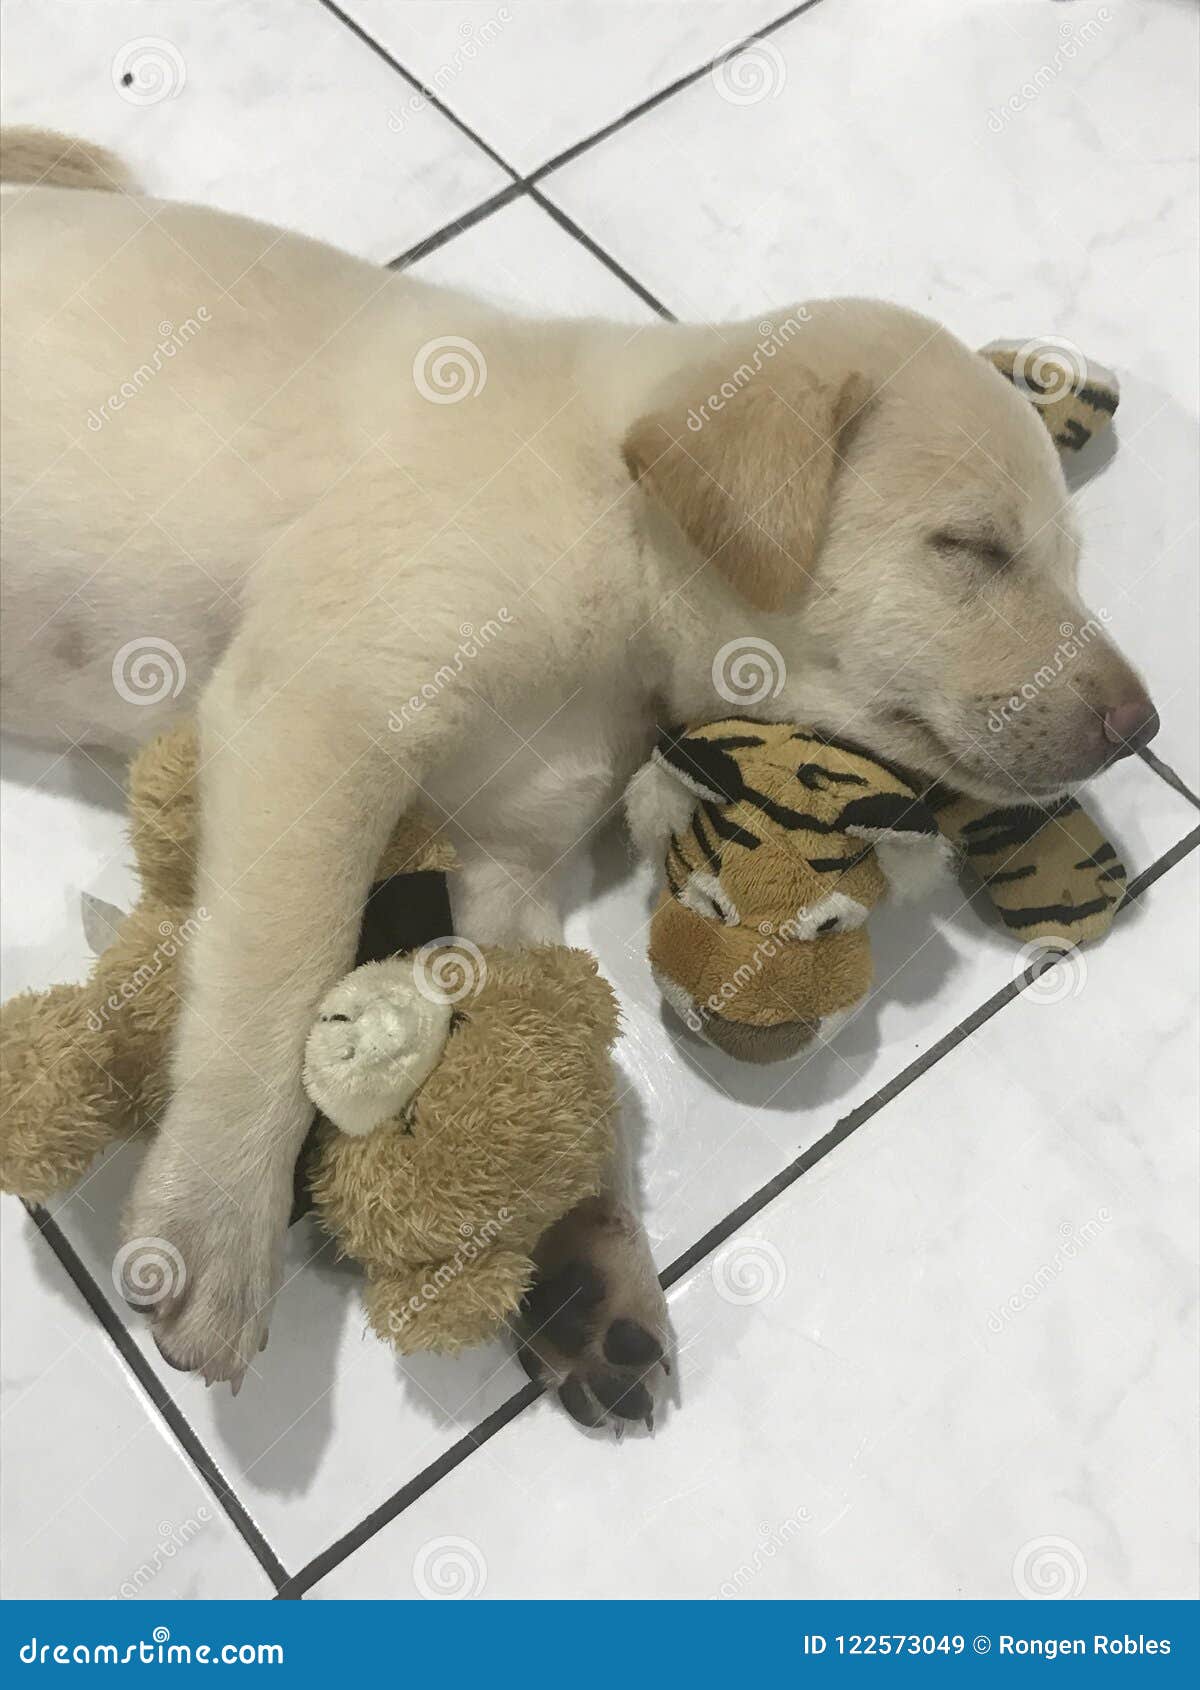 puppy hugging teddy bear